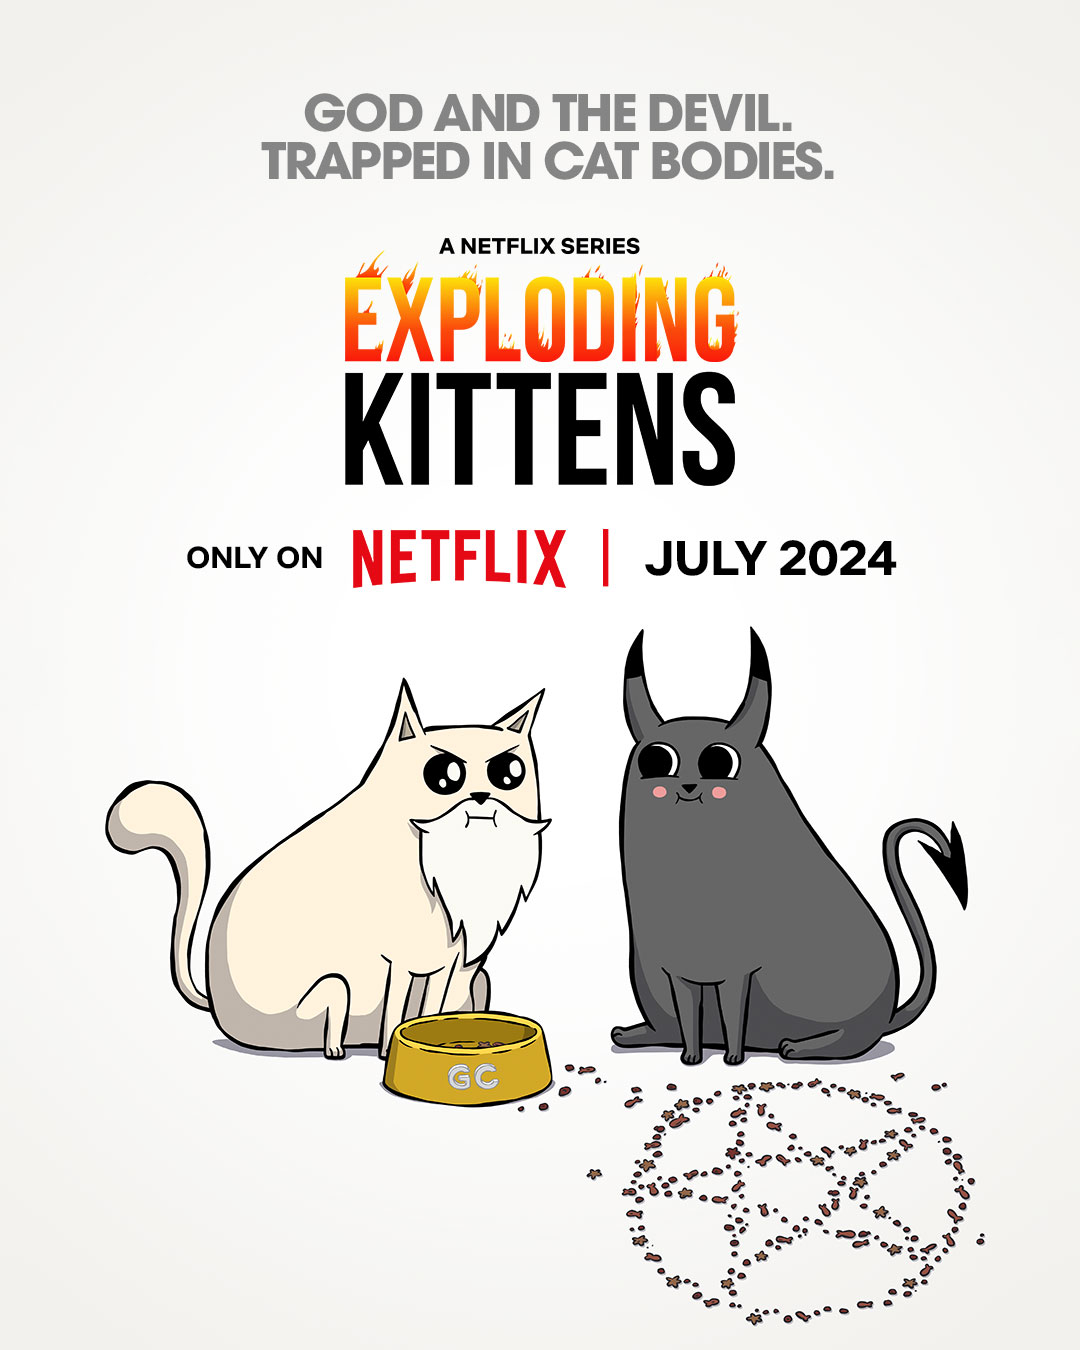 Netflix Shares Trailer For "Exploding Kittens"